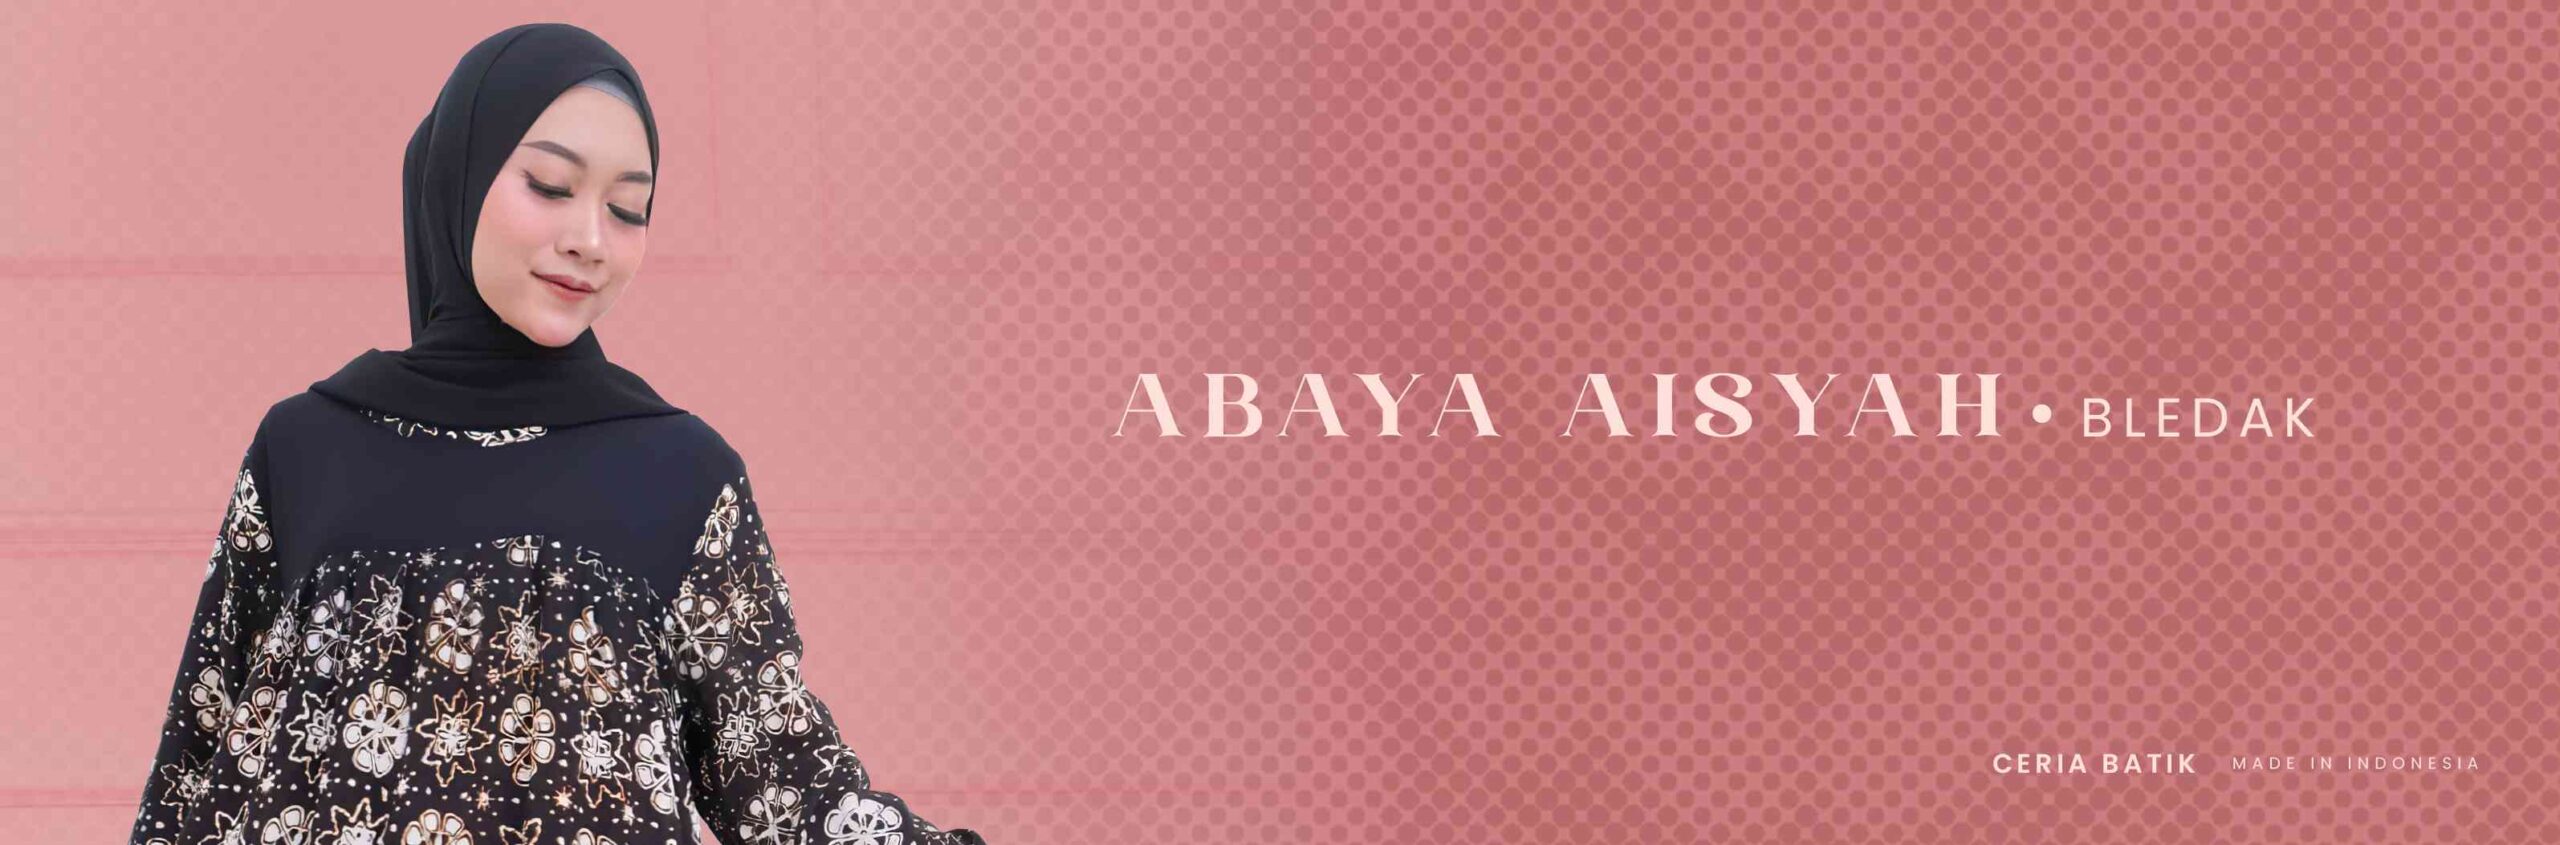 1. ABAYA AISYAH - BLEDAK